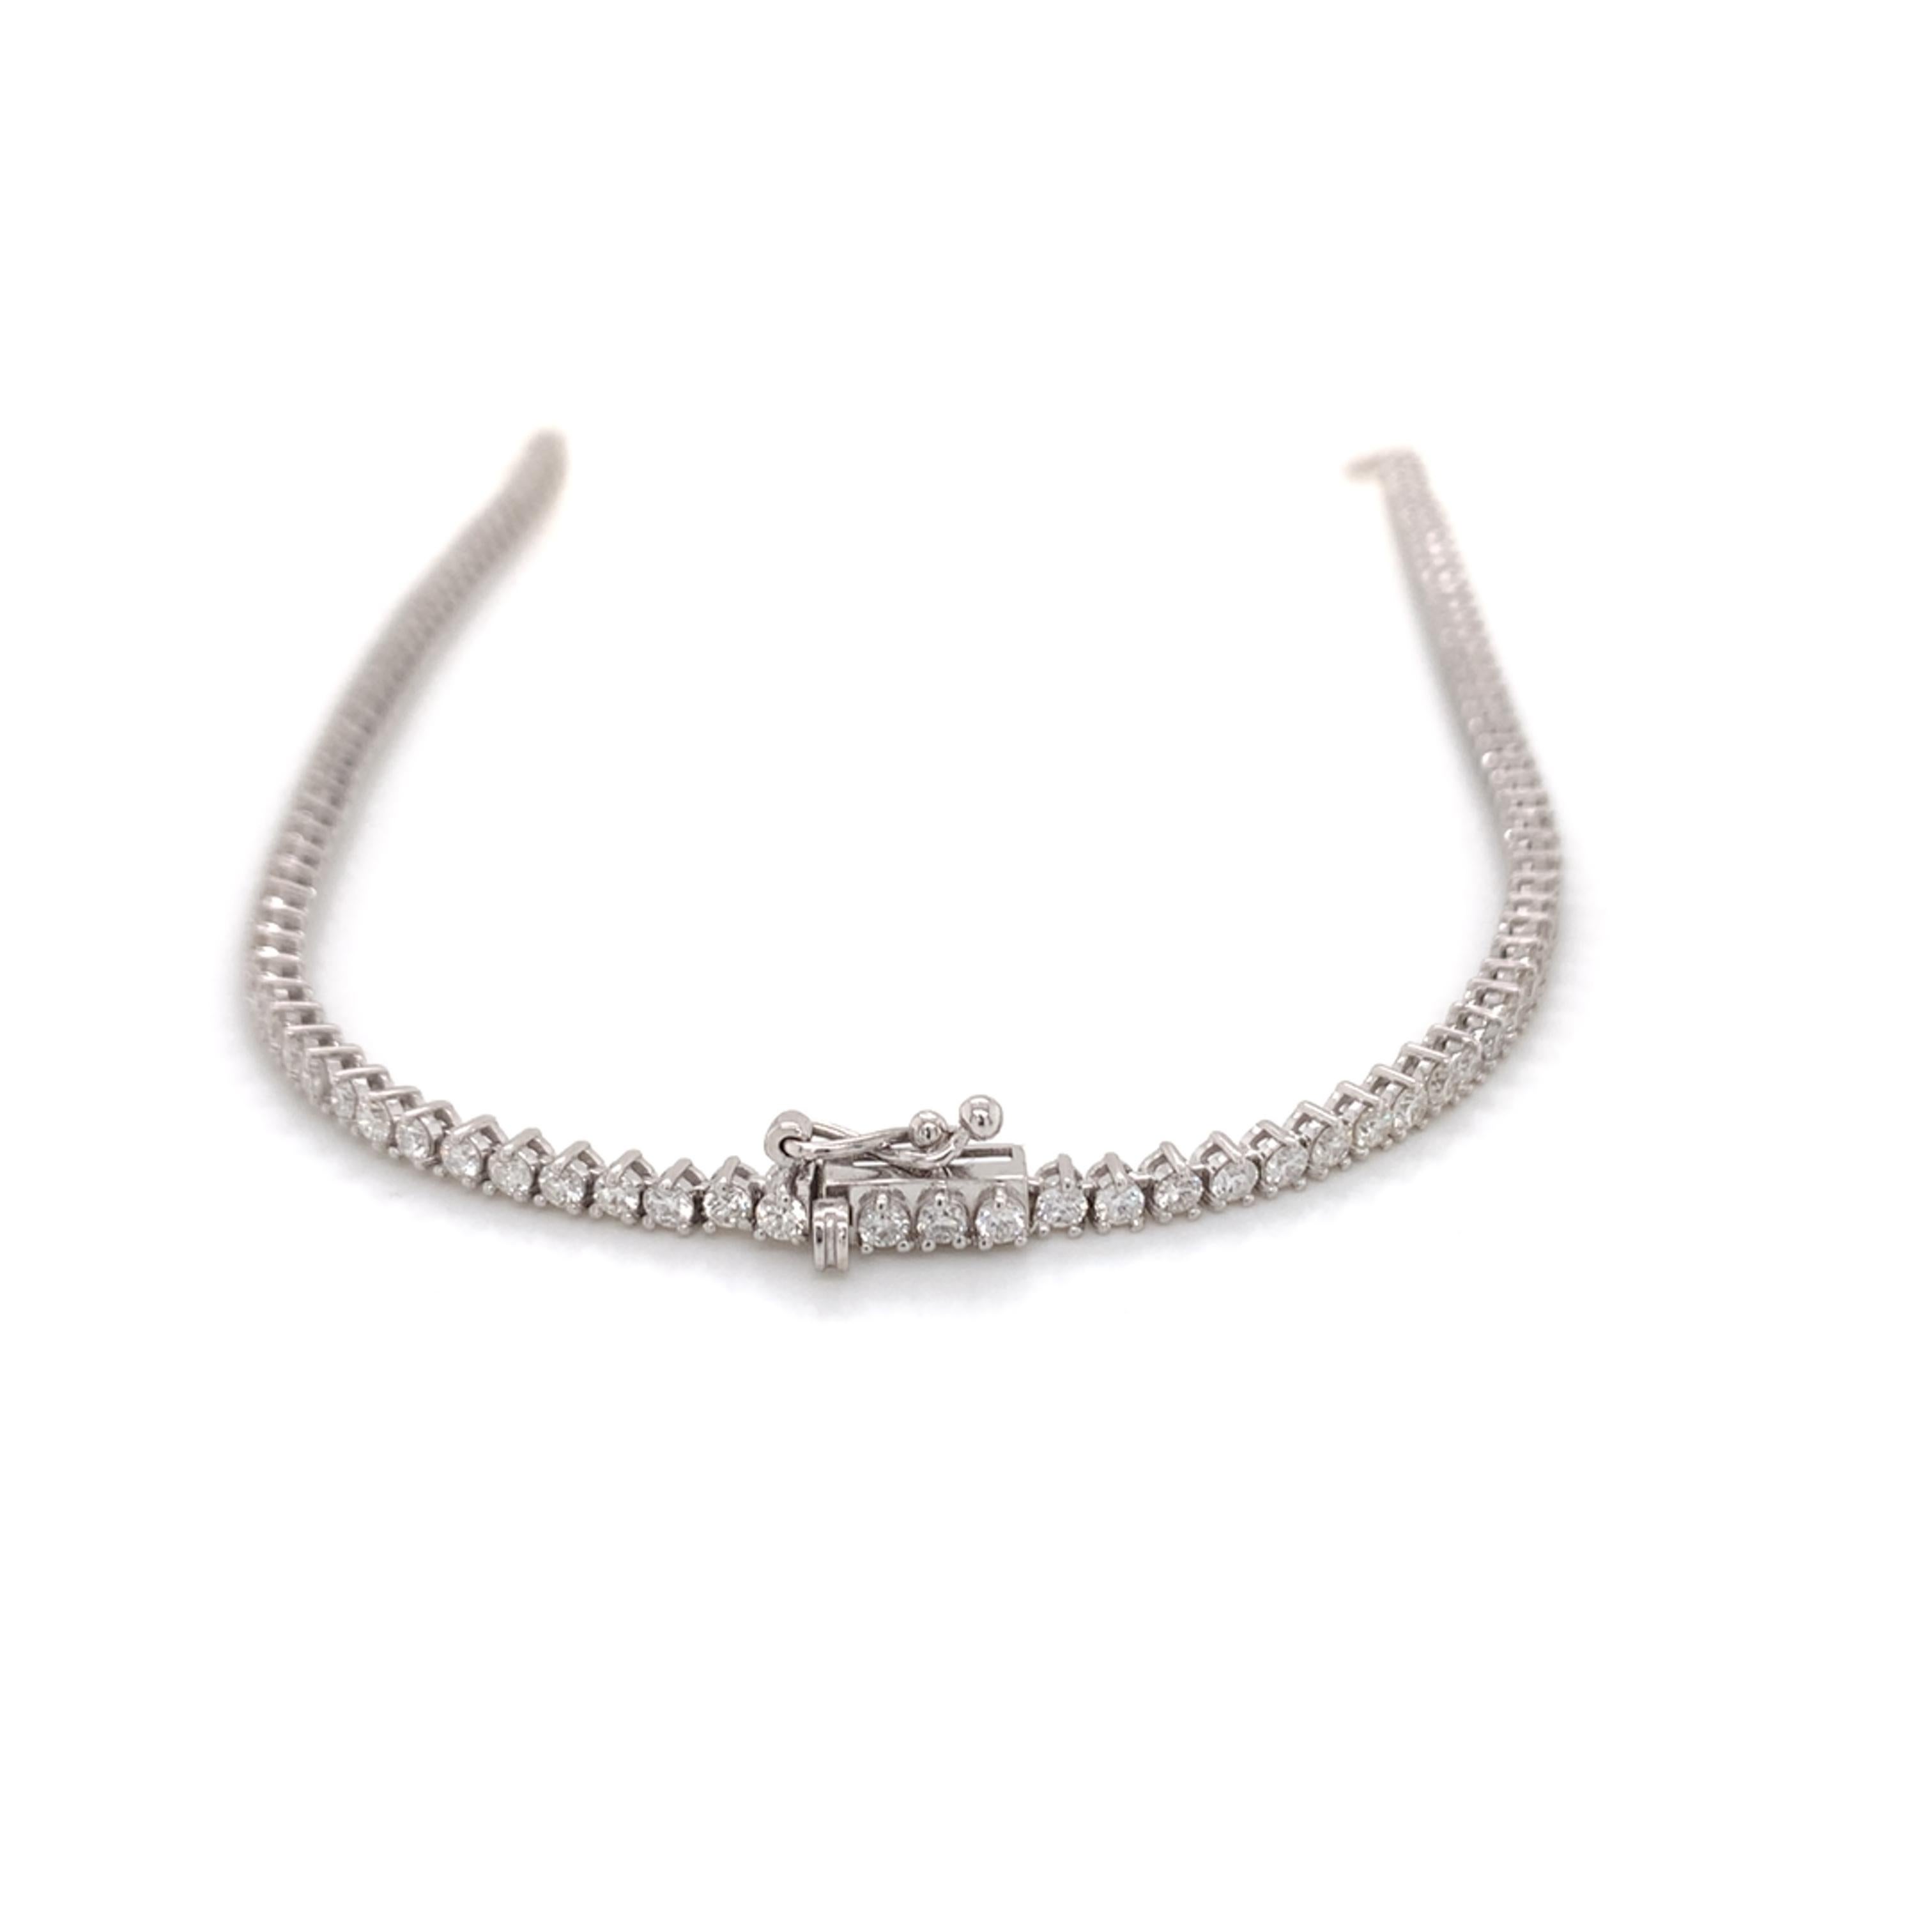 Brilliant Cut Riviera Diamond Necklace